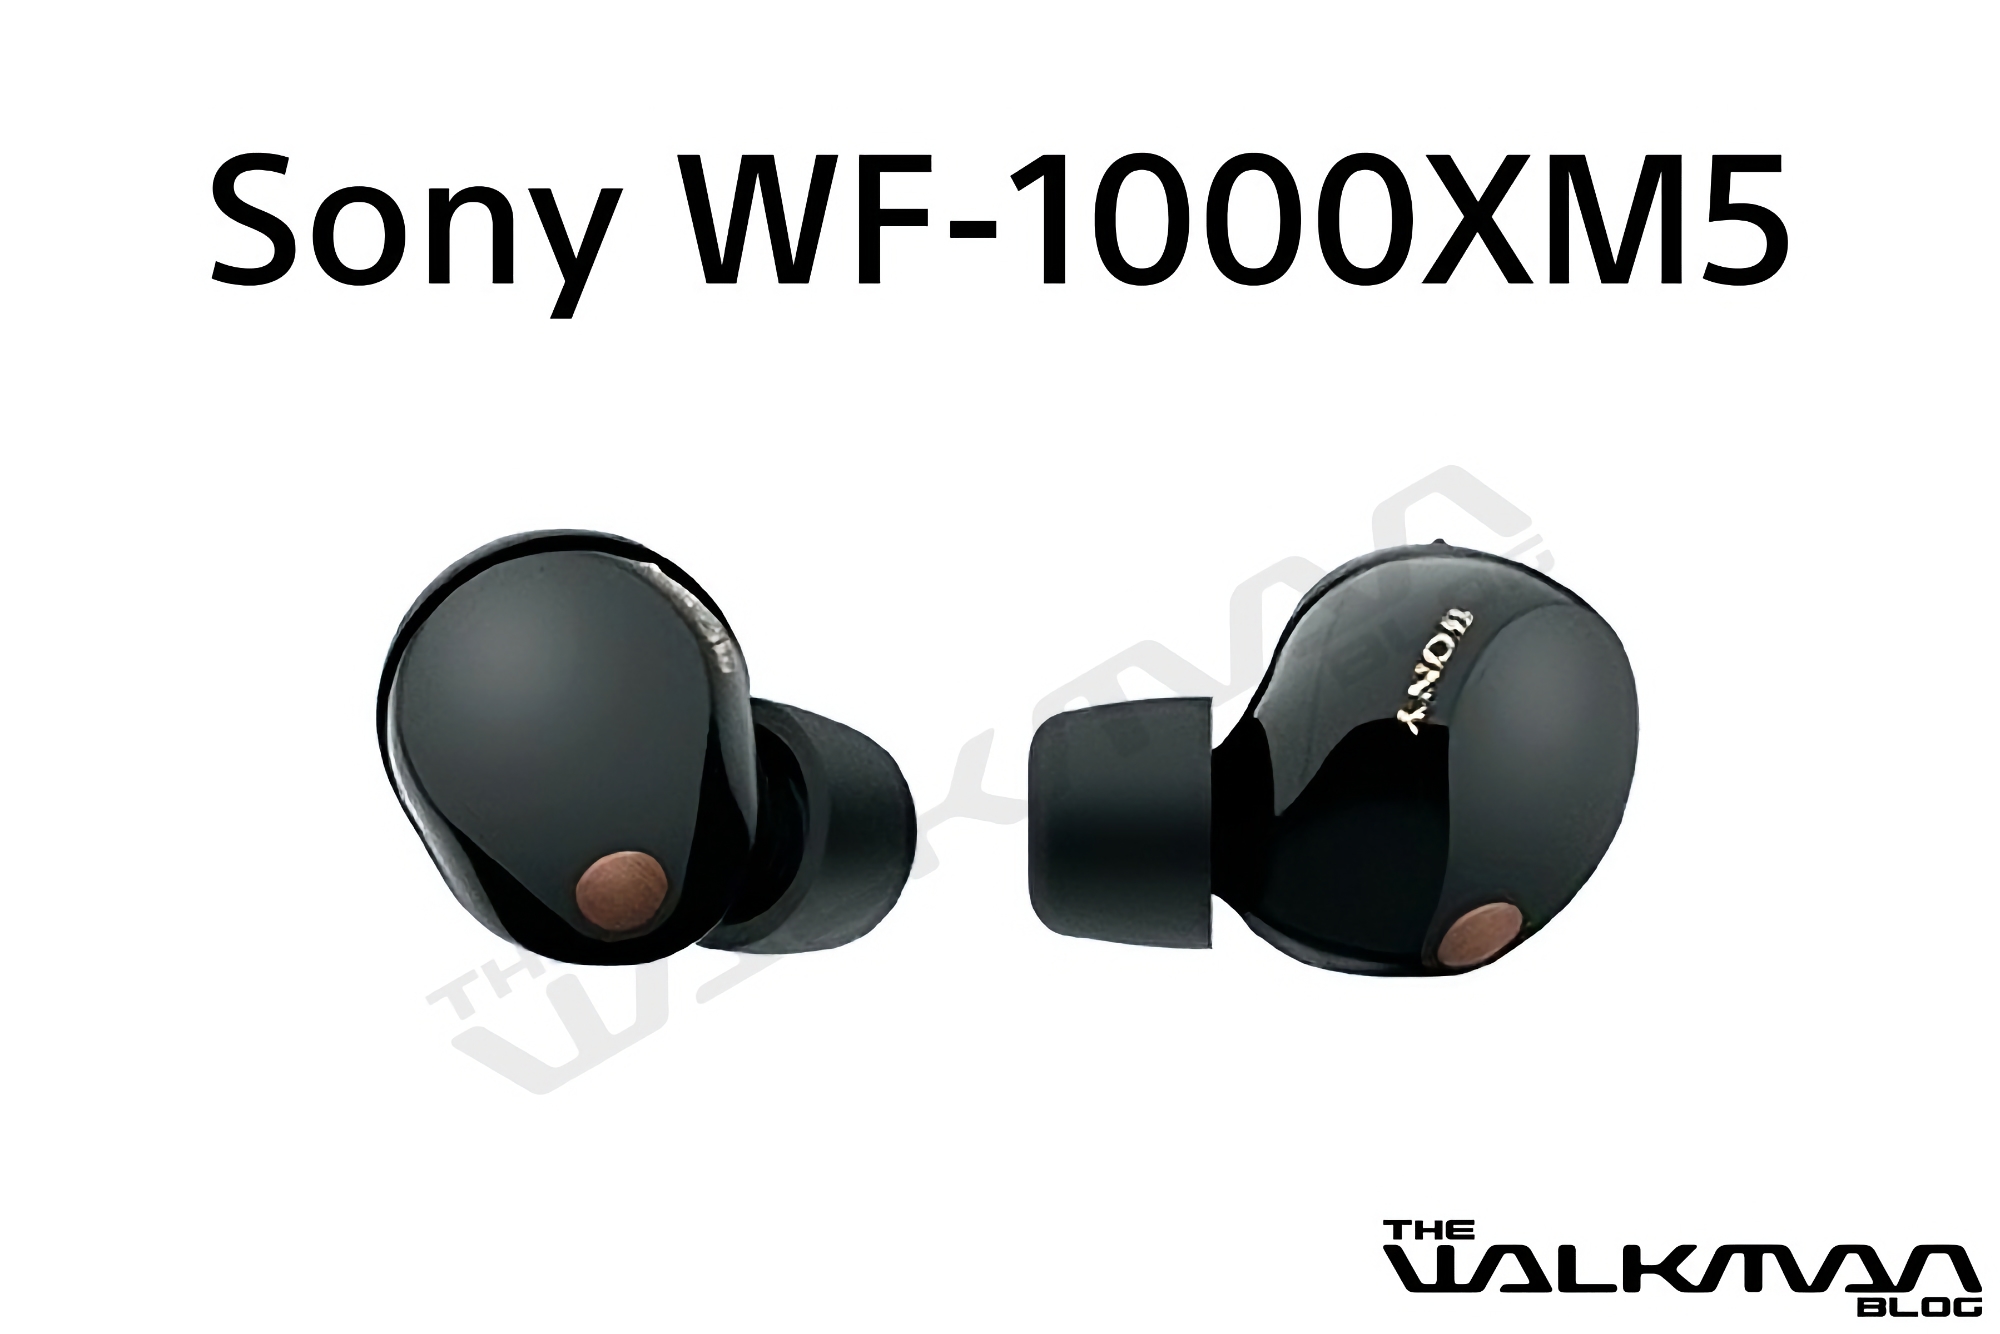 Sony's nieuwe vlaggenschip TWS oordopjes WF-1000MX5 met ANC en een batterijlevensduur tot 24 uur